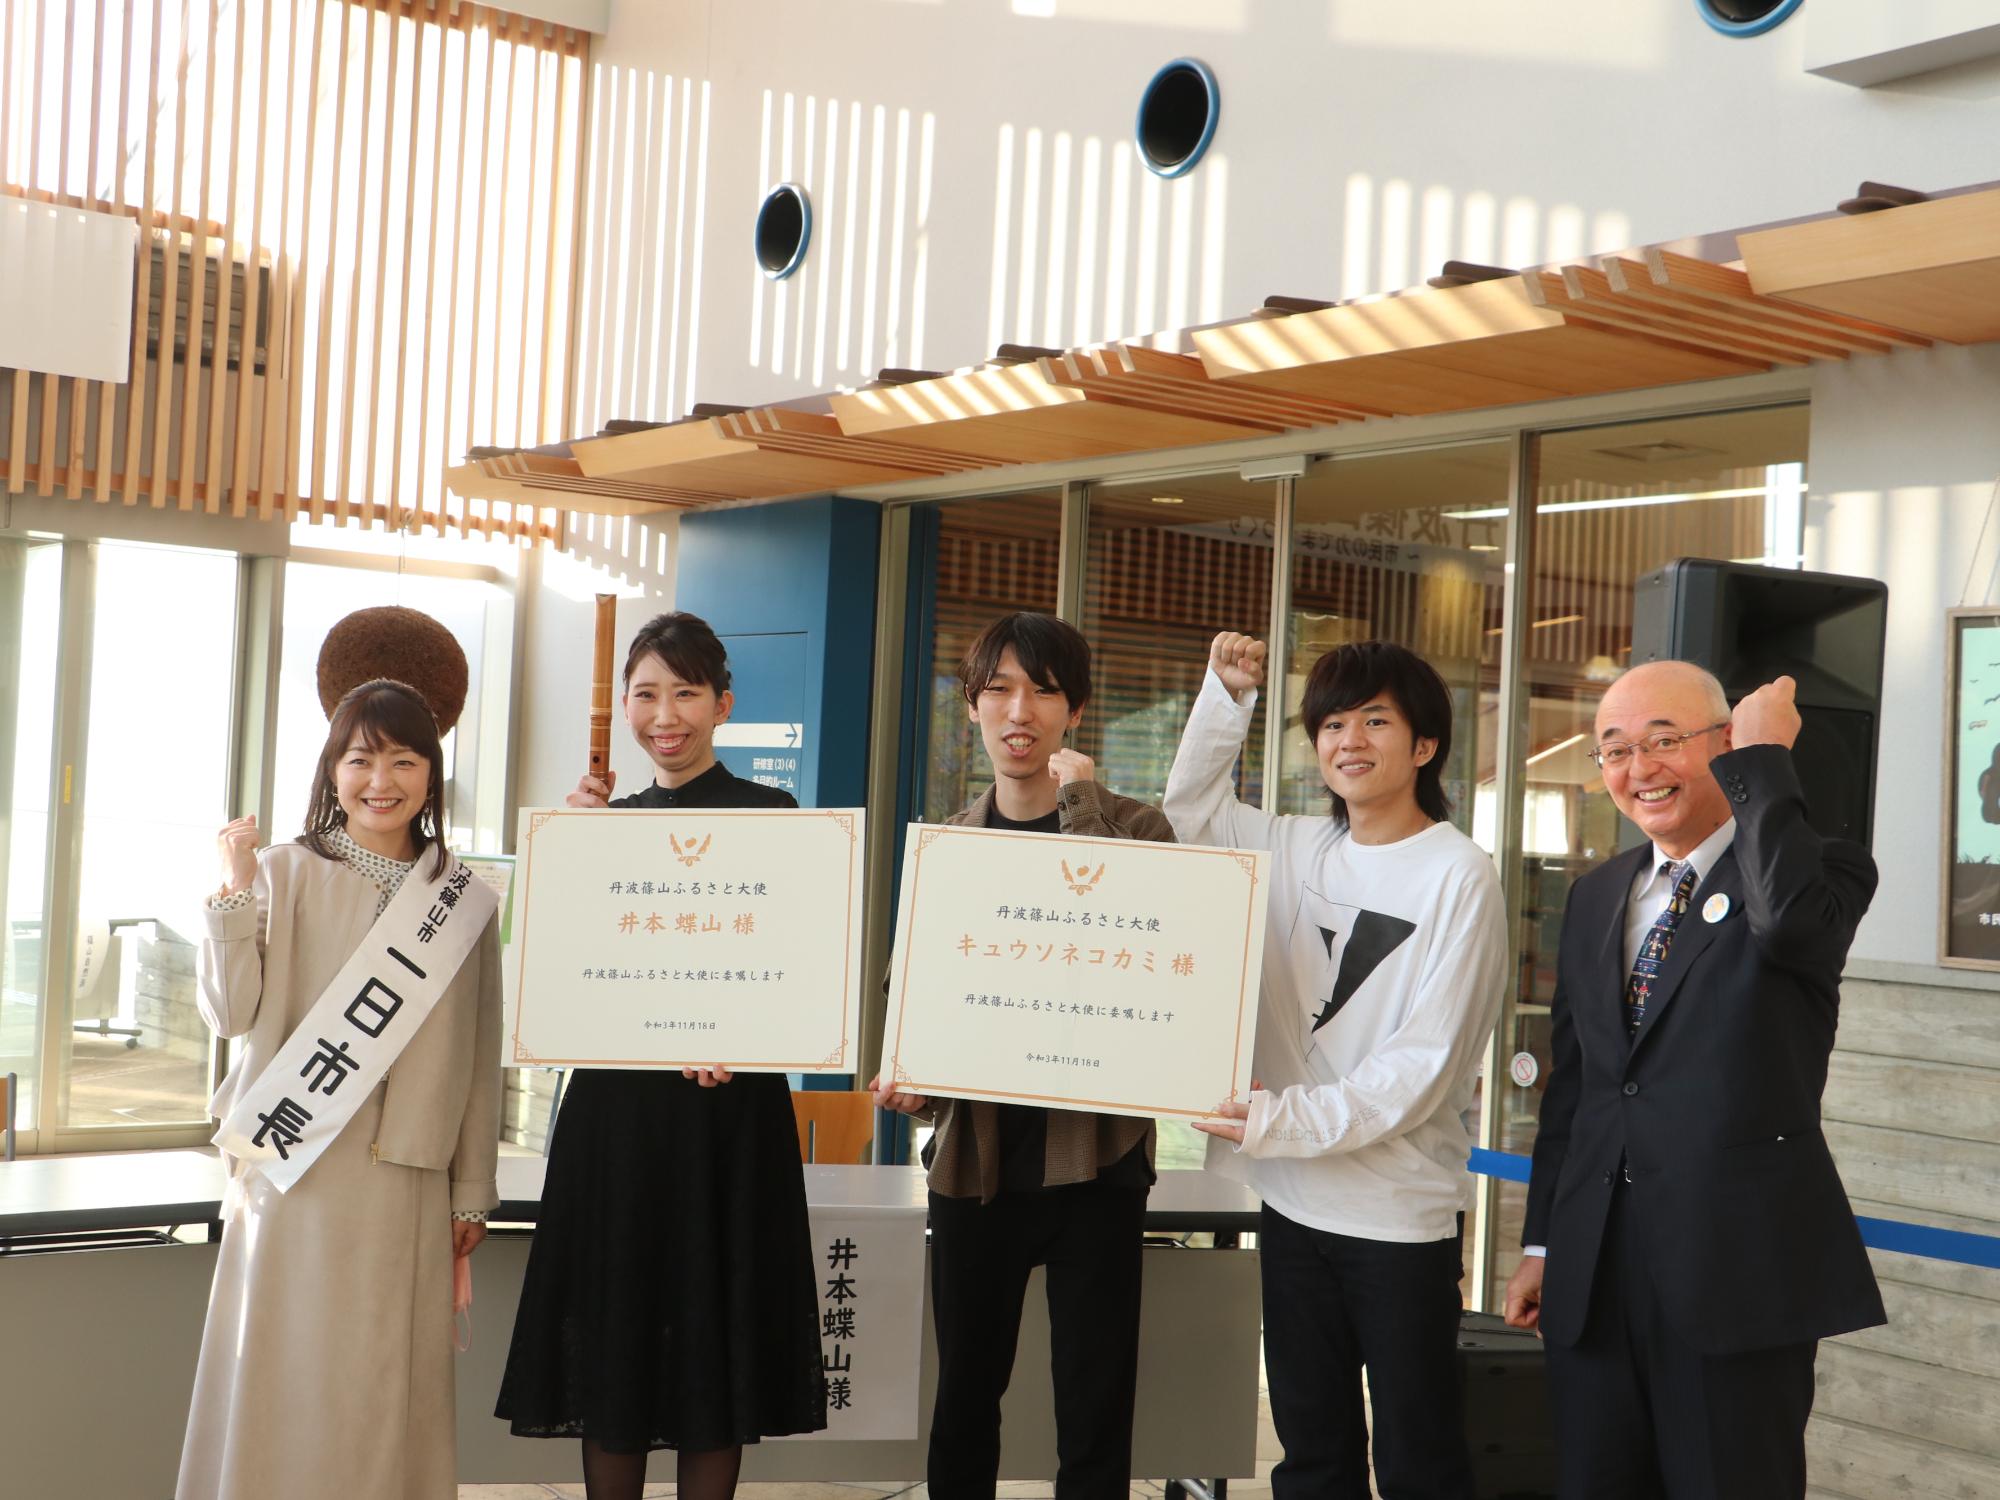 大きな委嘱状を手に持った井本さん、キュウソネコカミ、その隣に酒井市長と熊谷さんが並んで記念撮影